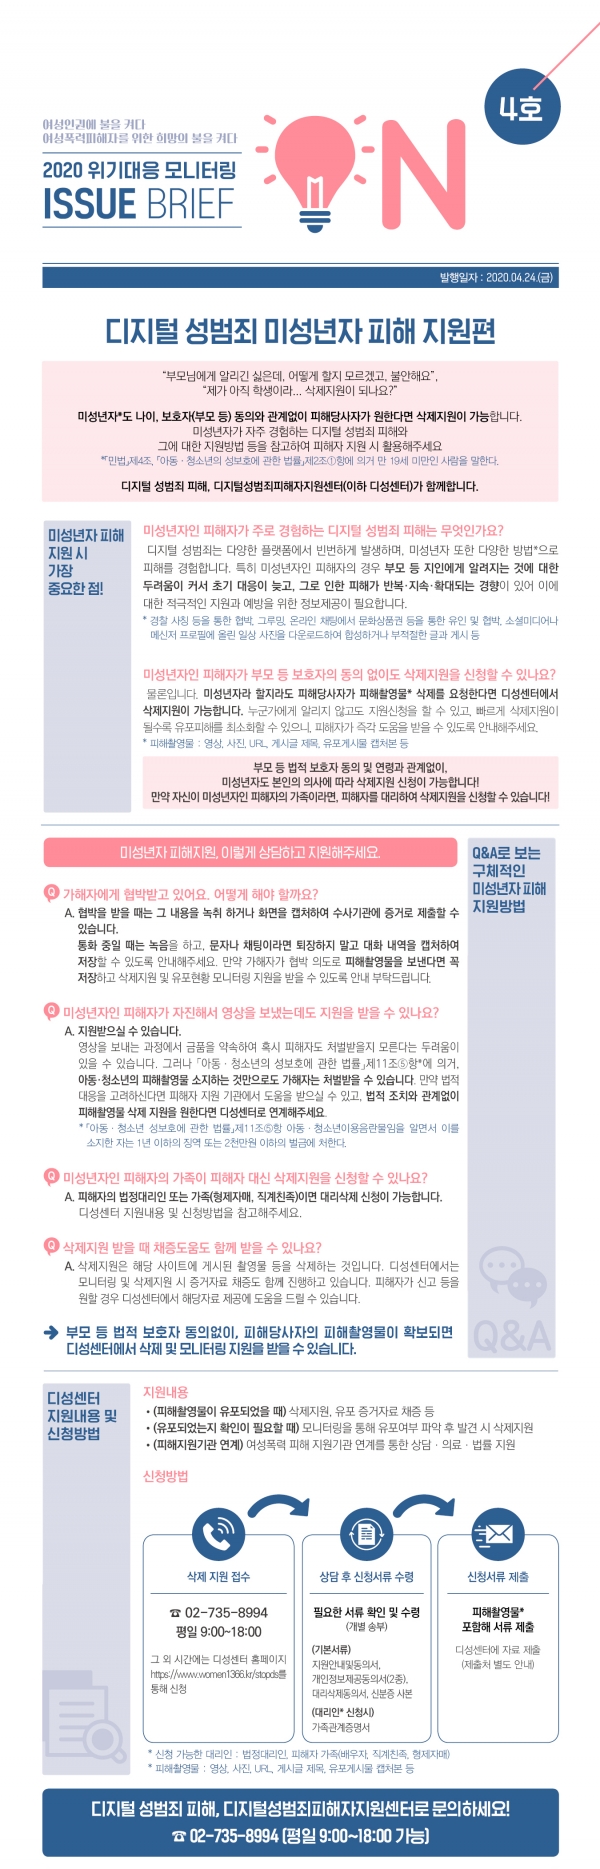 한국여성인권진흥원 2020 위기대응 모니터링 이슈브리프 'ON' 4호 미성년자 피해지원 편 ⓒ한국여성인권진흥원